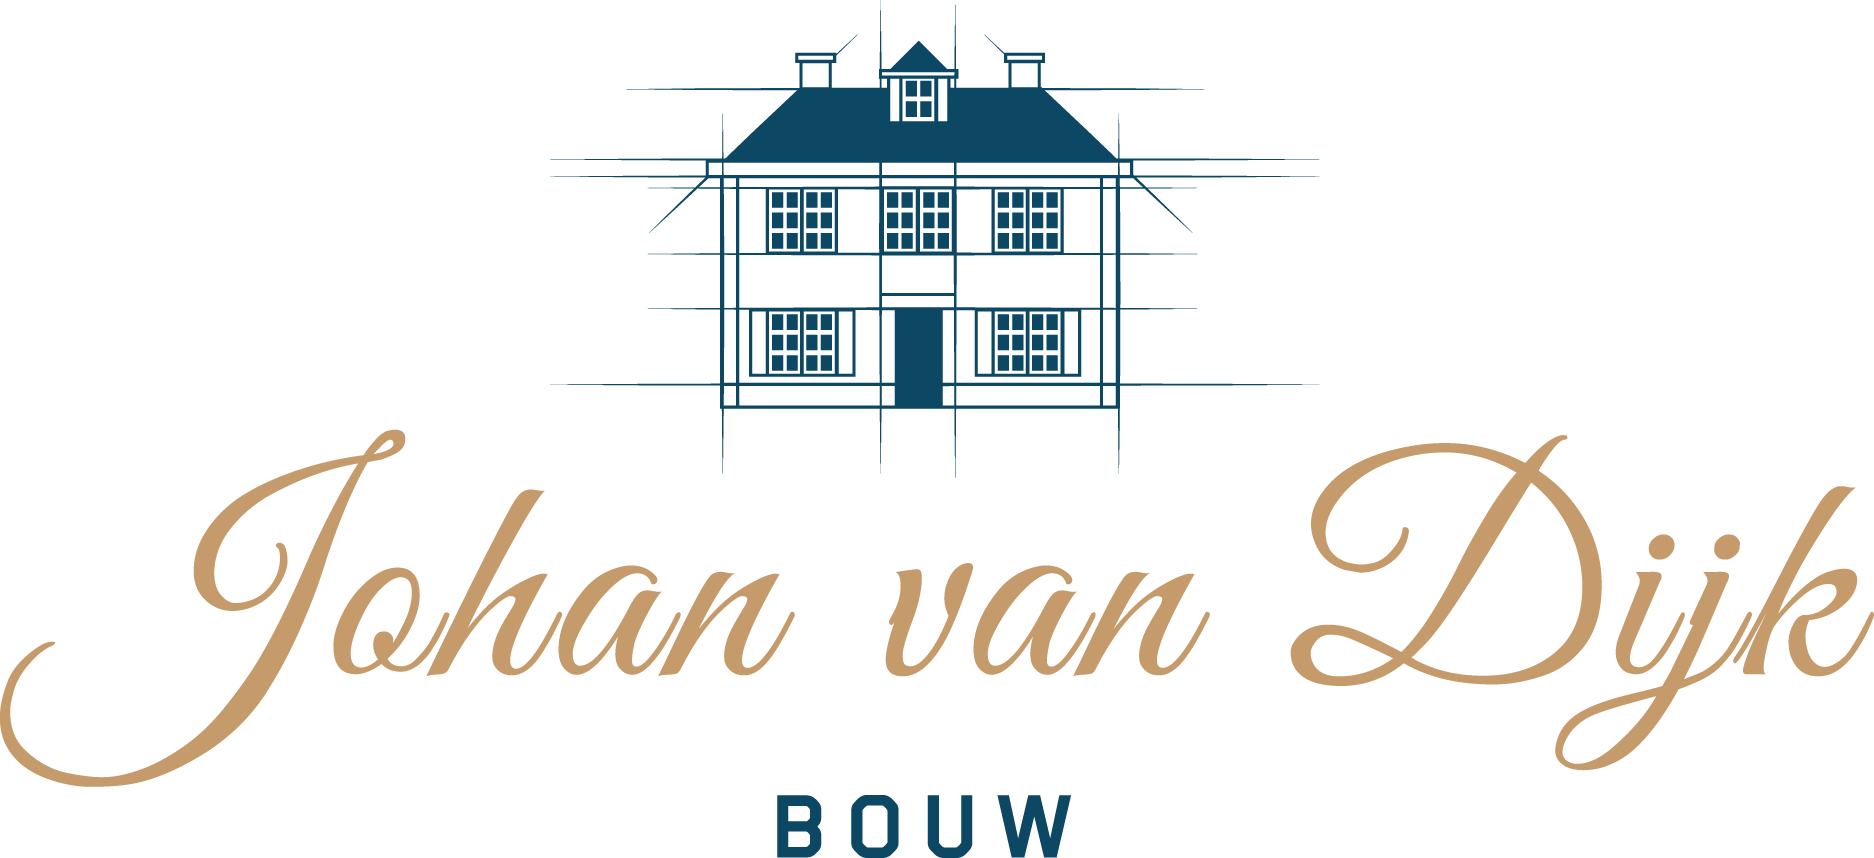 Johan van Dijk Bouw